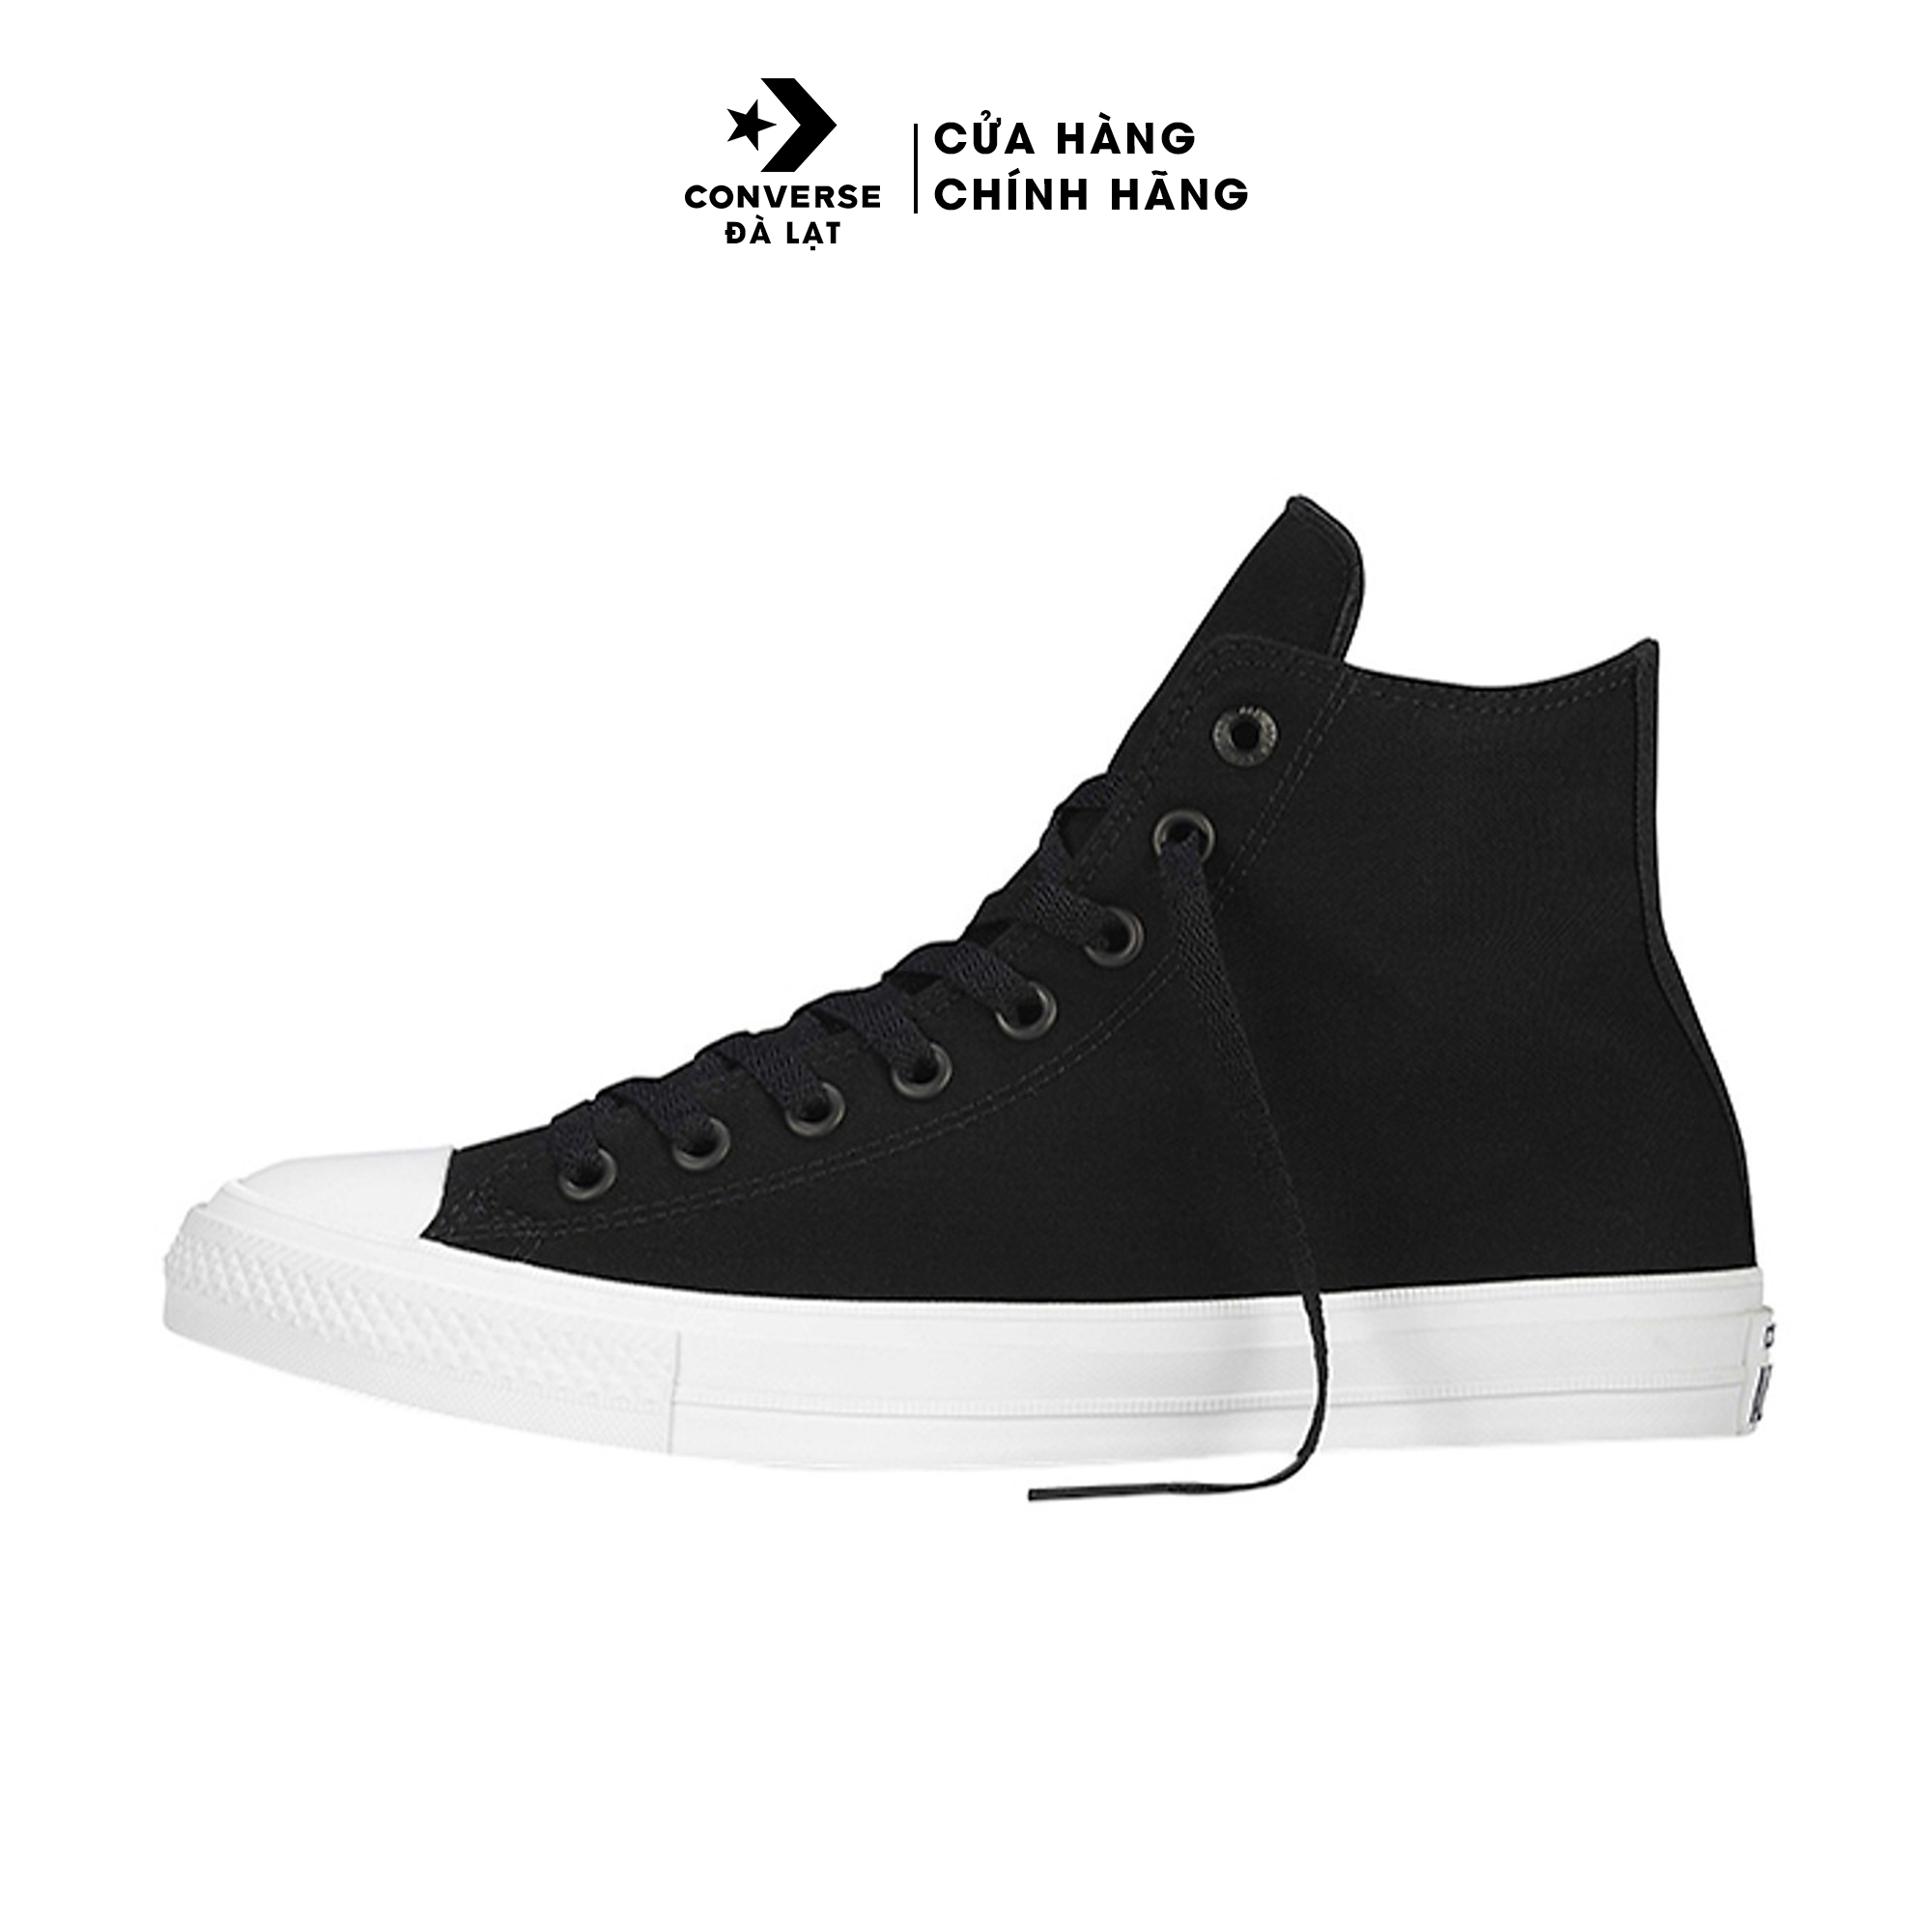 Giày Sneaker Thời Trang Converse Chuck Taylor All Star II - 150143V